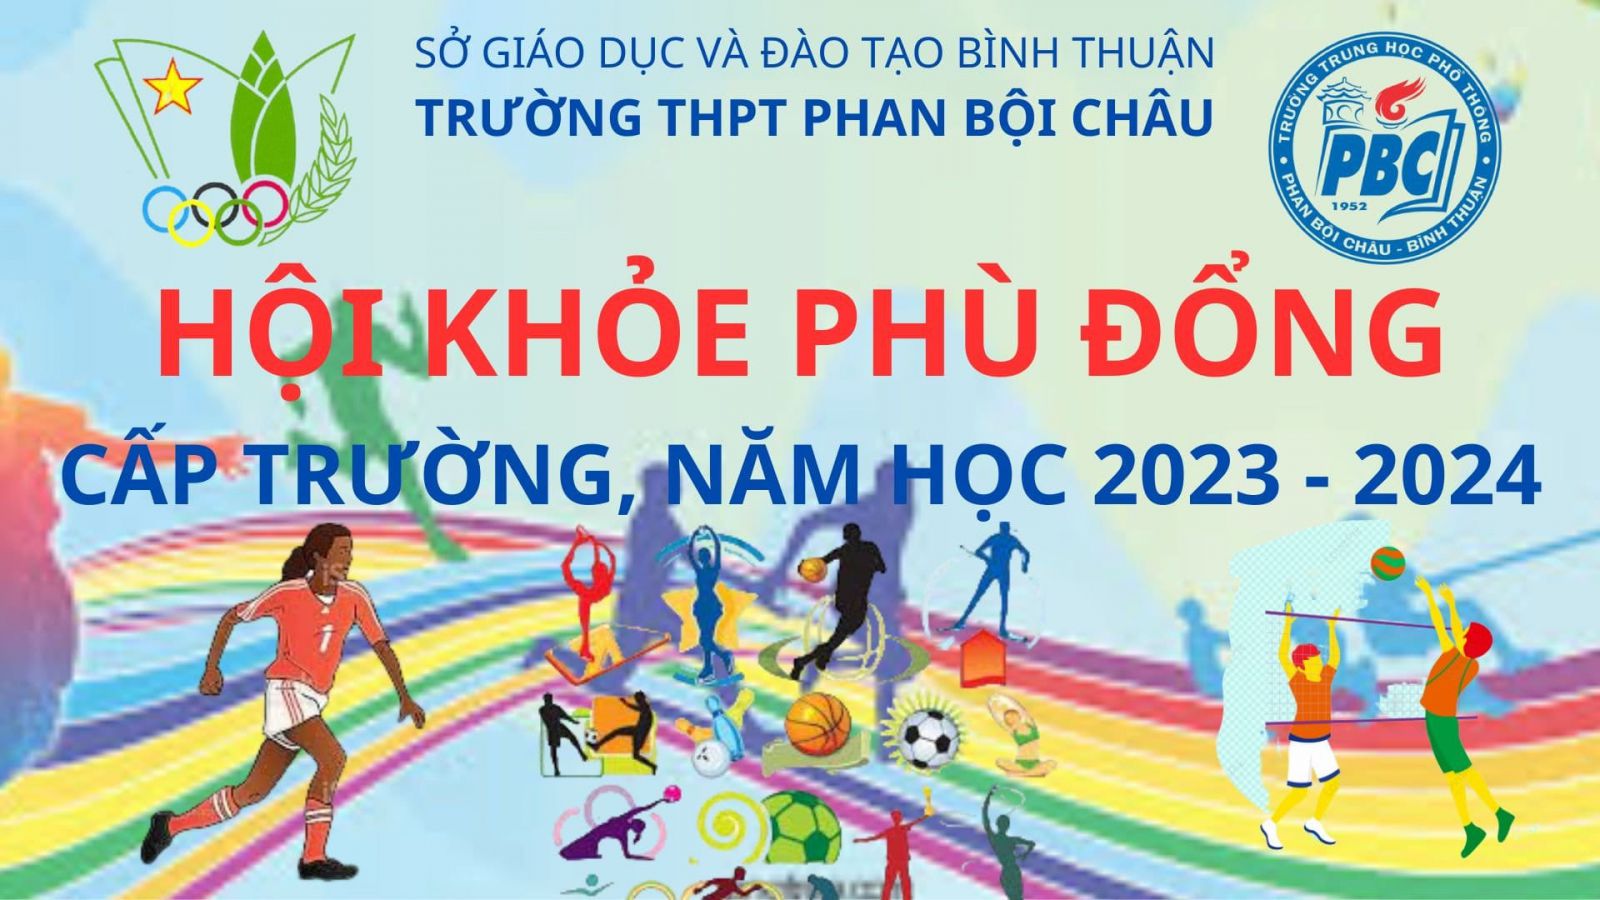 Hội khỏe Phù Đổng cấp trường năm học 2023-2024